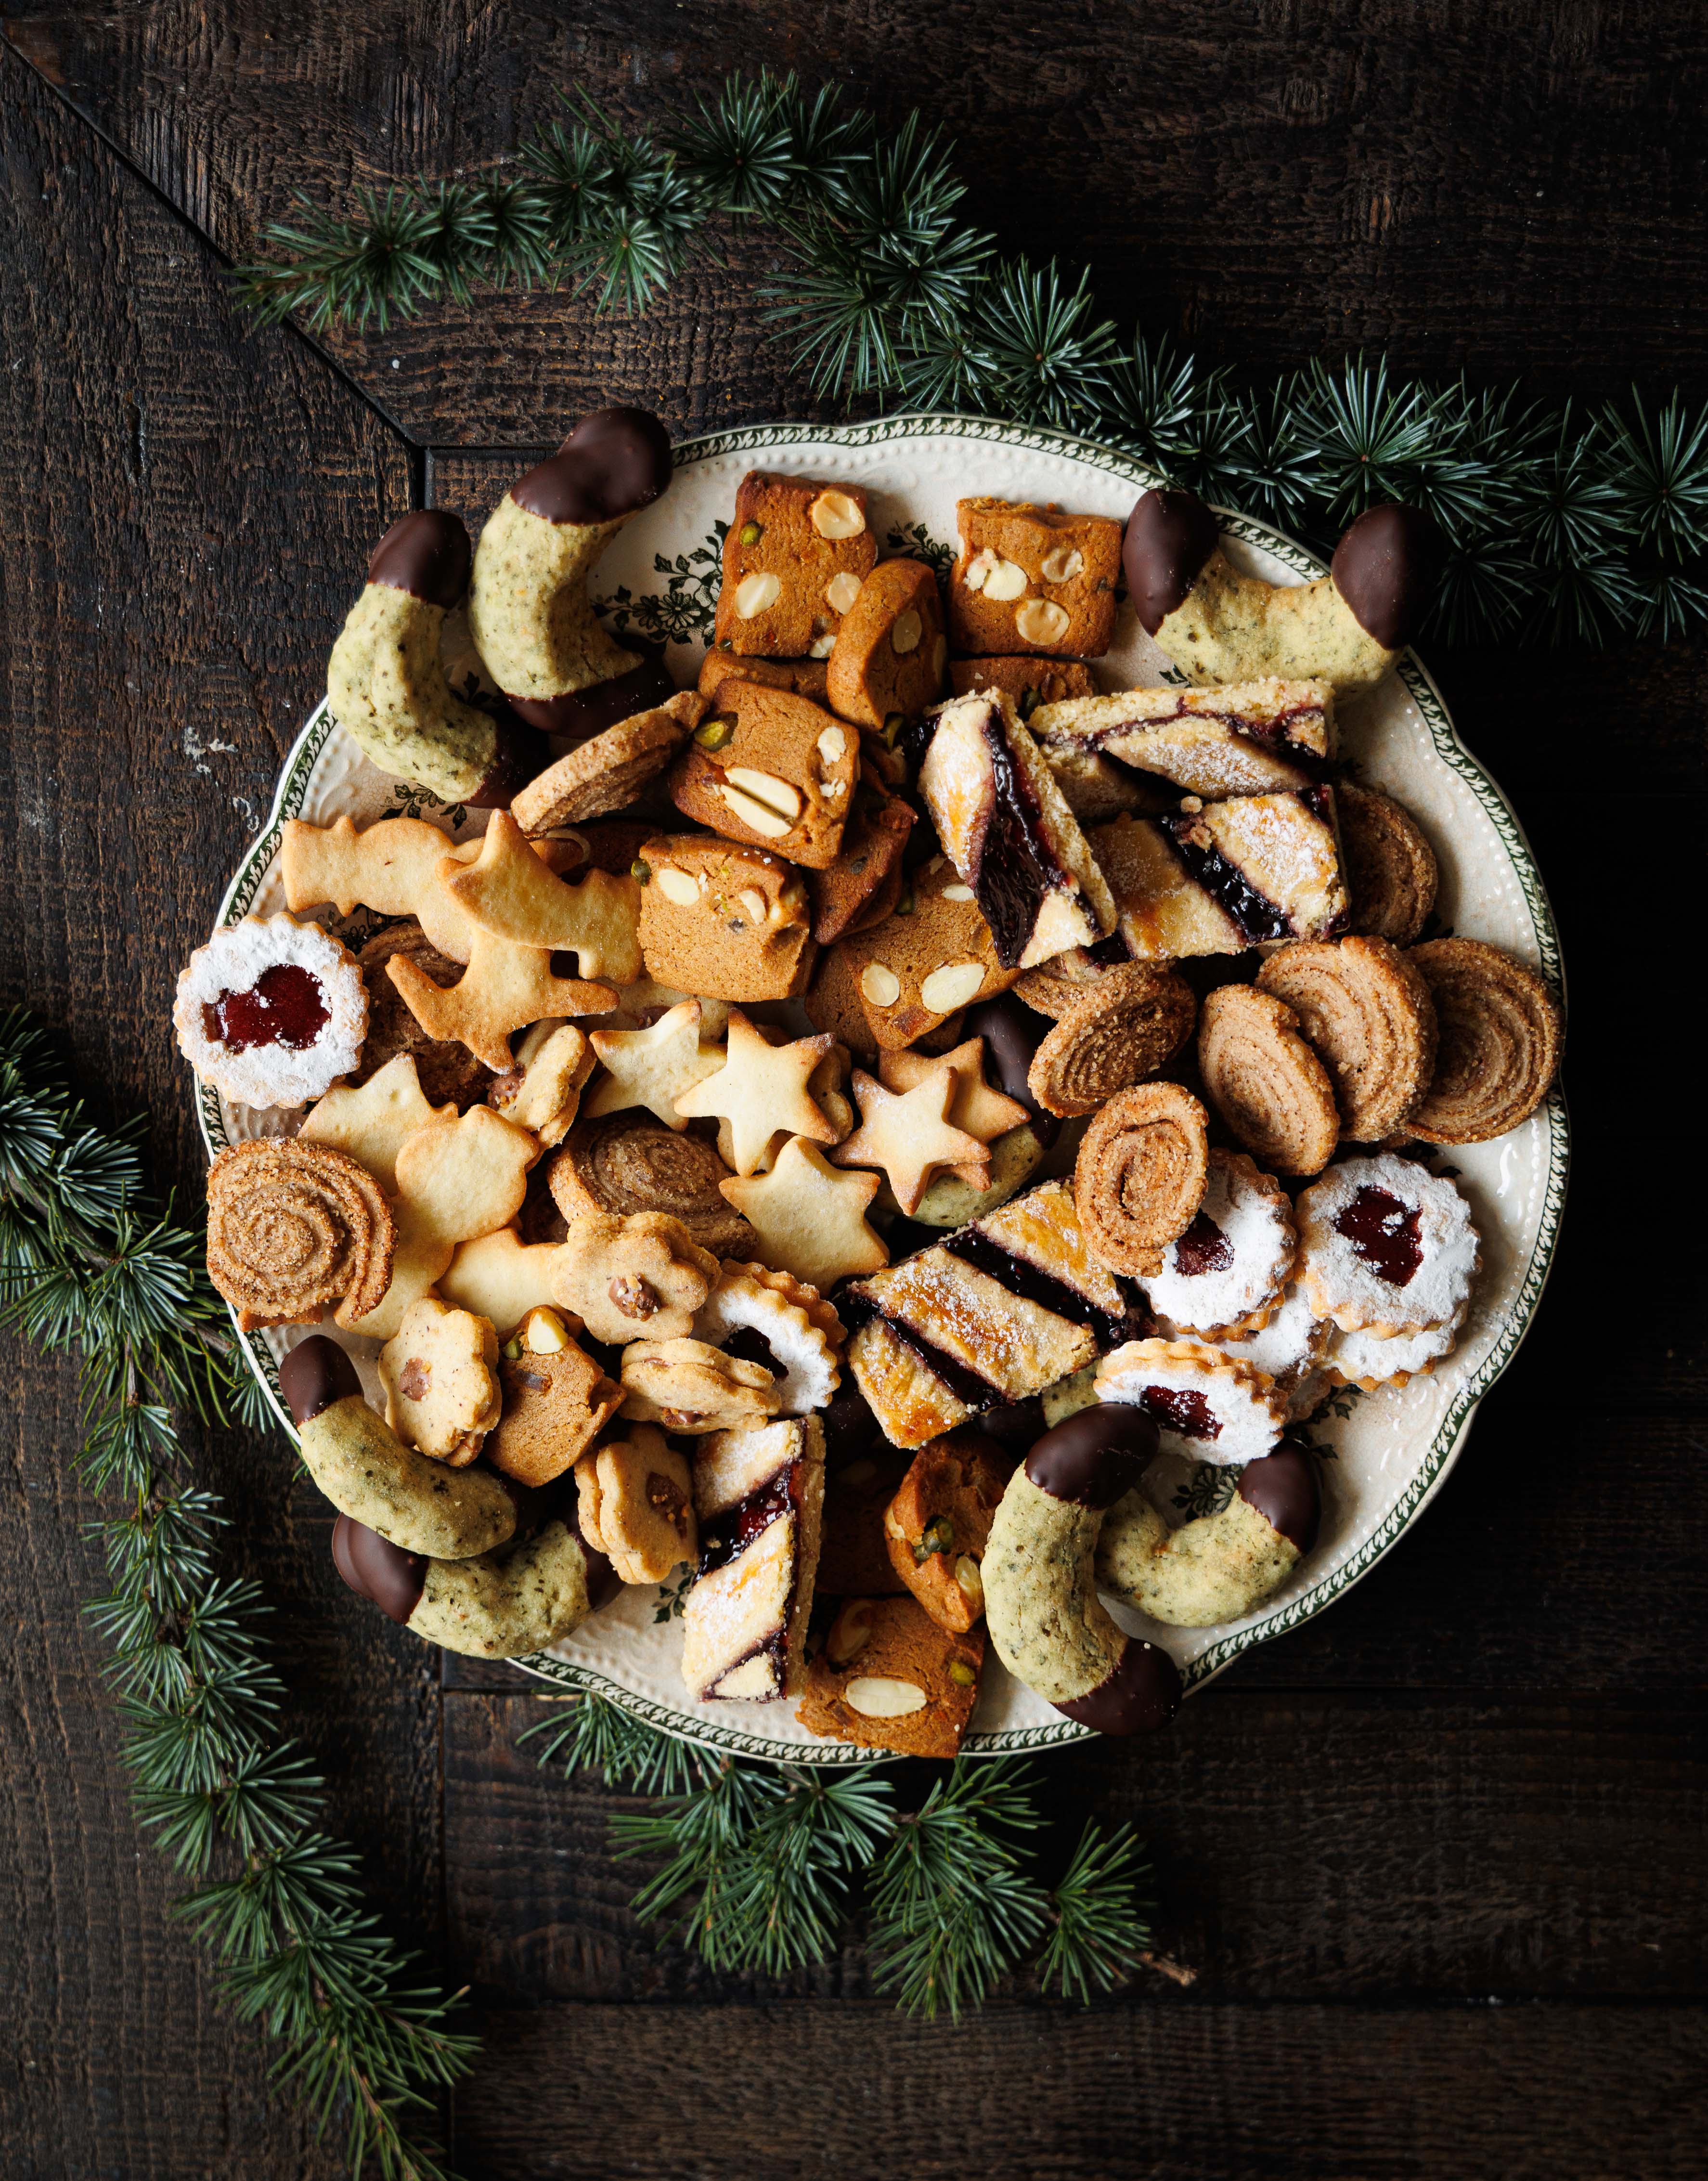 Desserts de Noël : idées de recettes festives